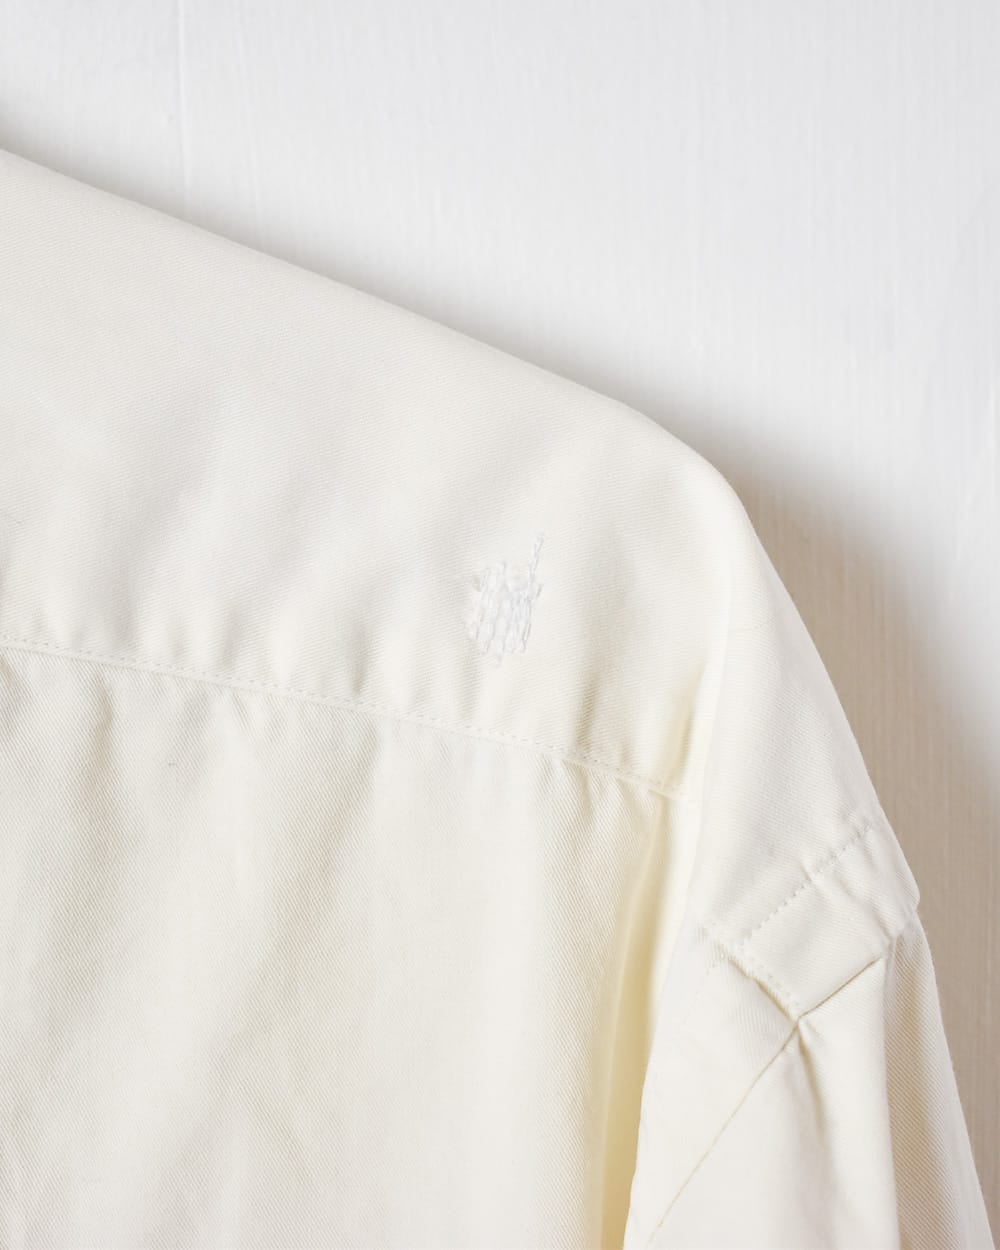 Neutral Polo Ralph Lauren Shirt - X-Large